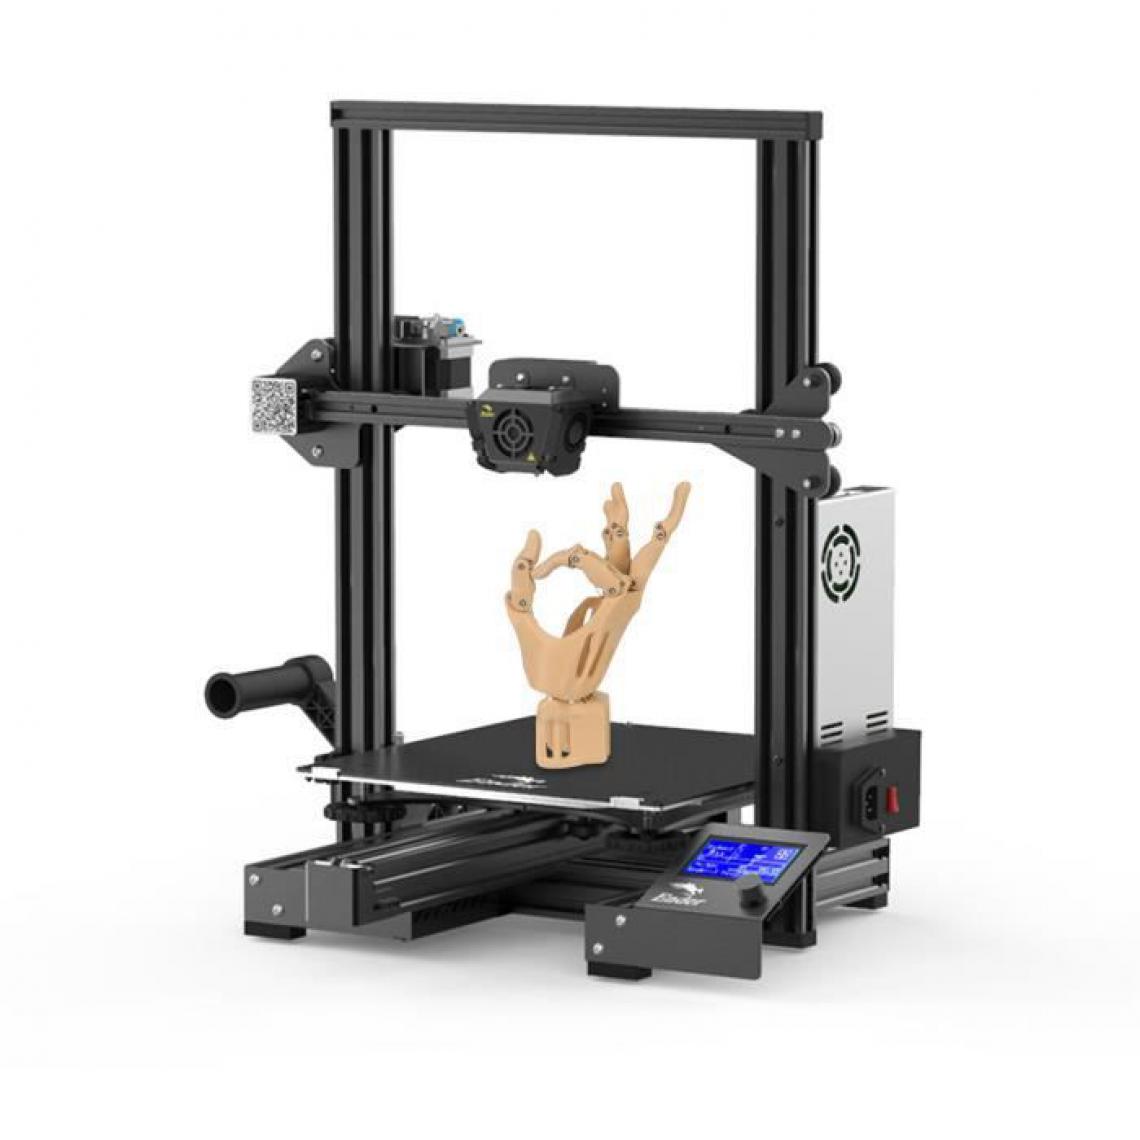 Creality3D - Creality Ender-3 Max - Kit d'imprimante 3D - 300 * 300 * 340mm - Imprimante 3D